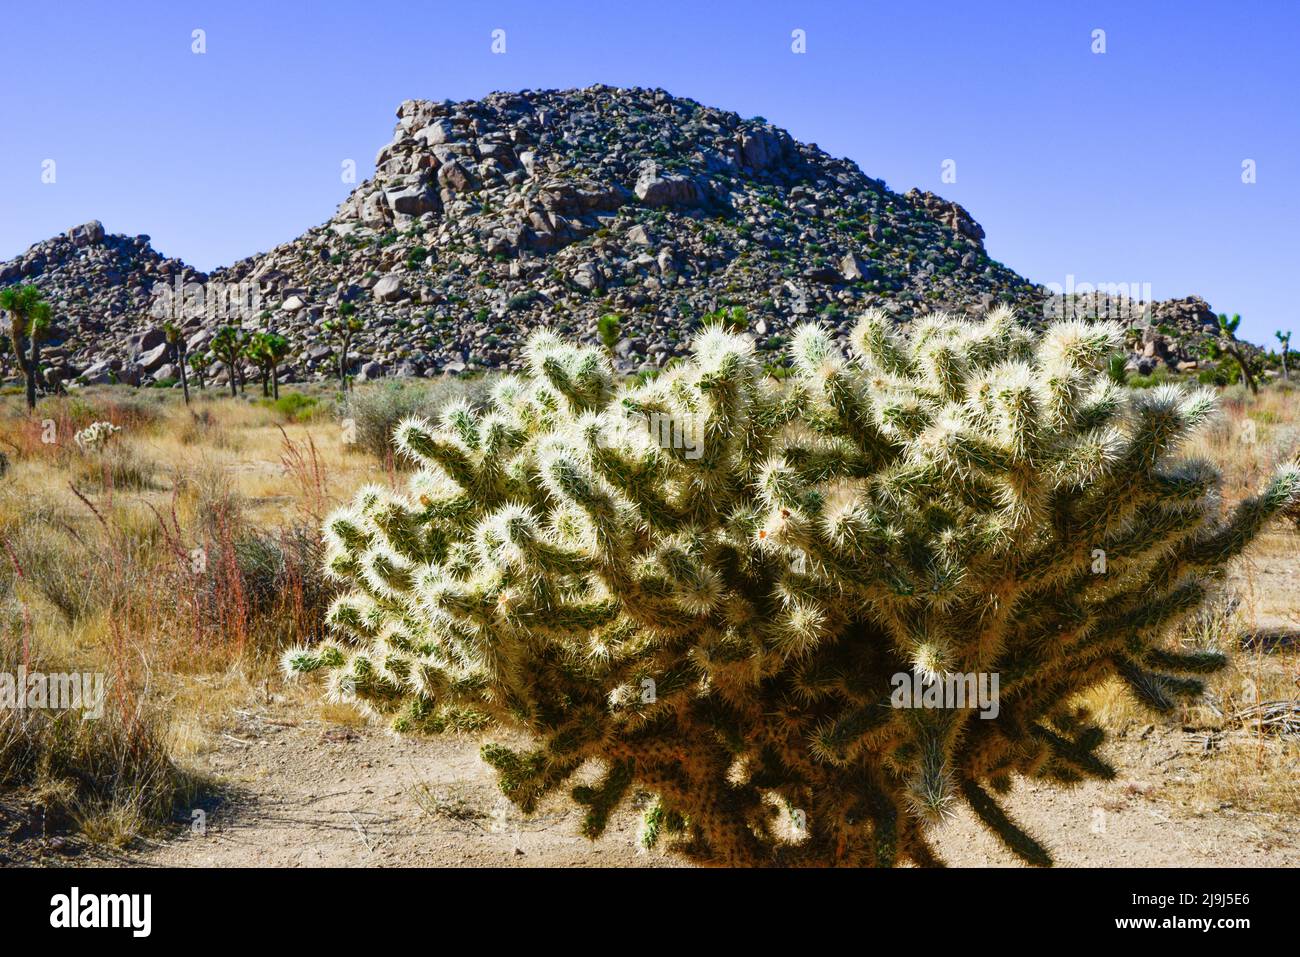 Le parc national unique de la Jolla cactus gardenin Joshua Tree dans le désert de Mojave, en Californie Banque D'Images